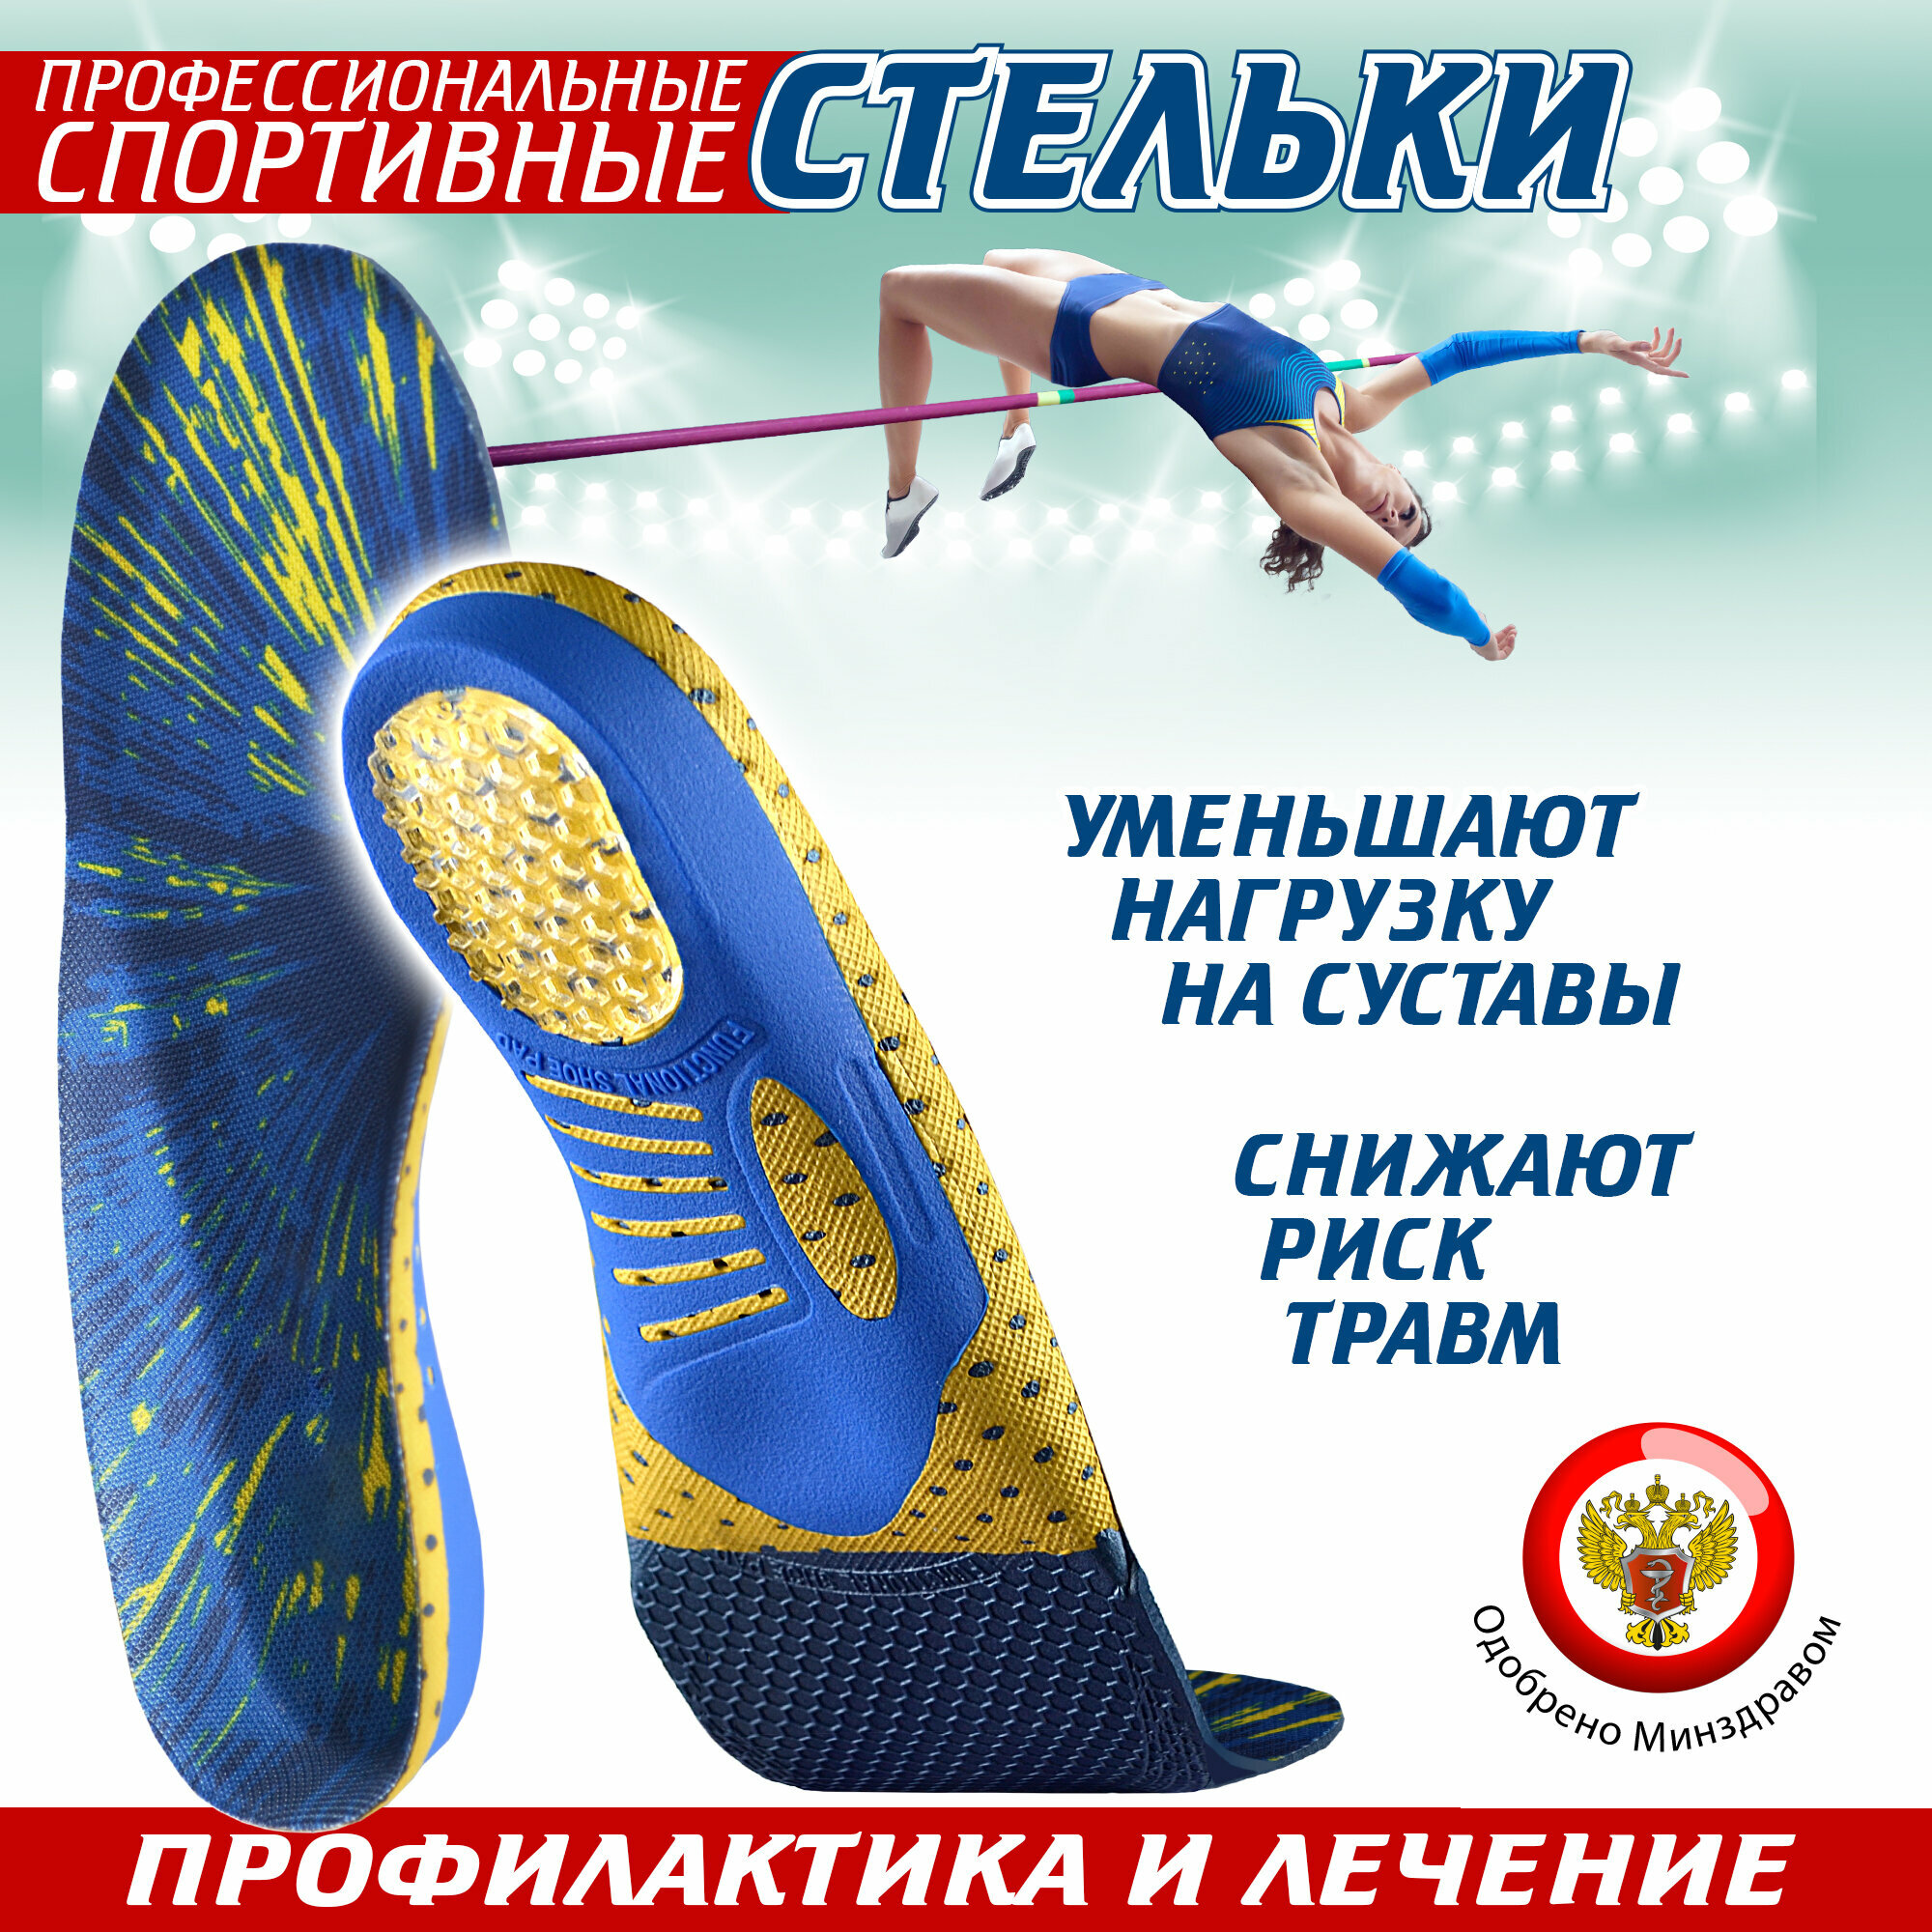 Ортопедические стельки спортивные Sport, для обуви (45)